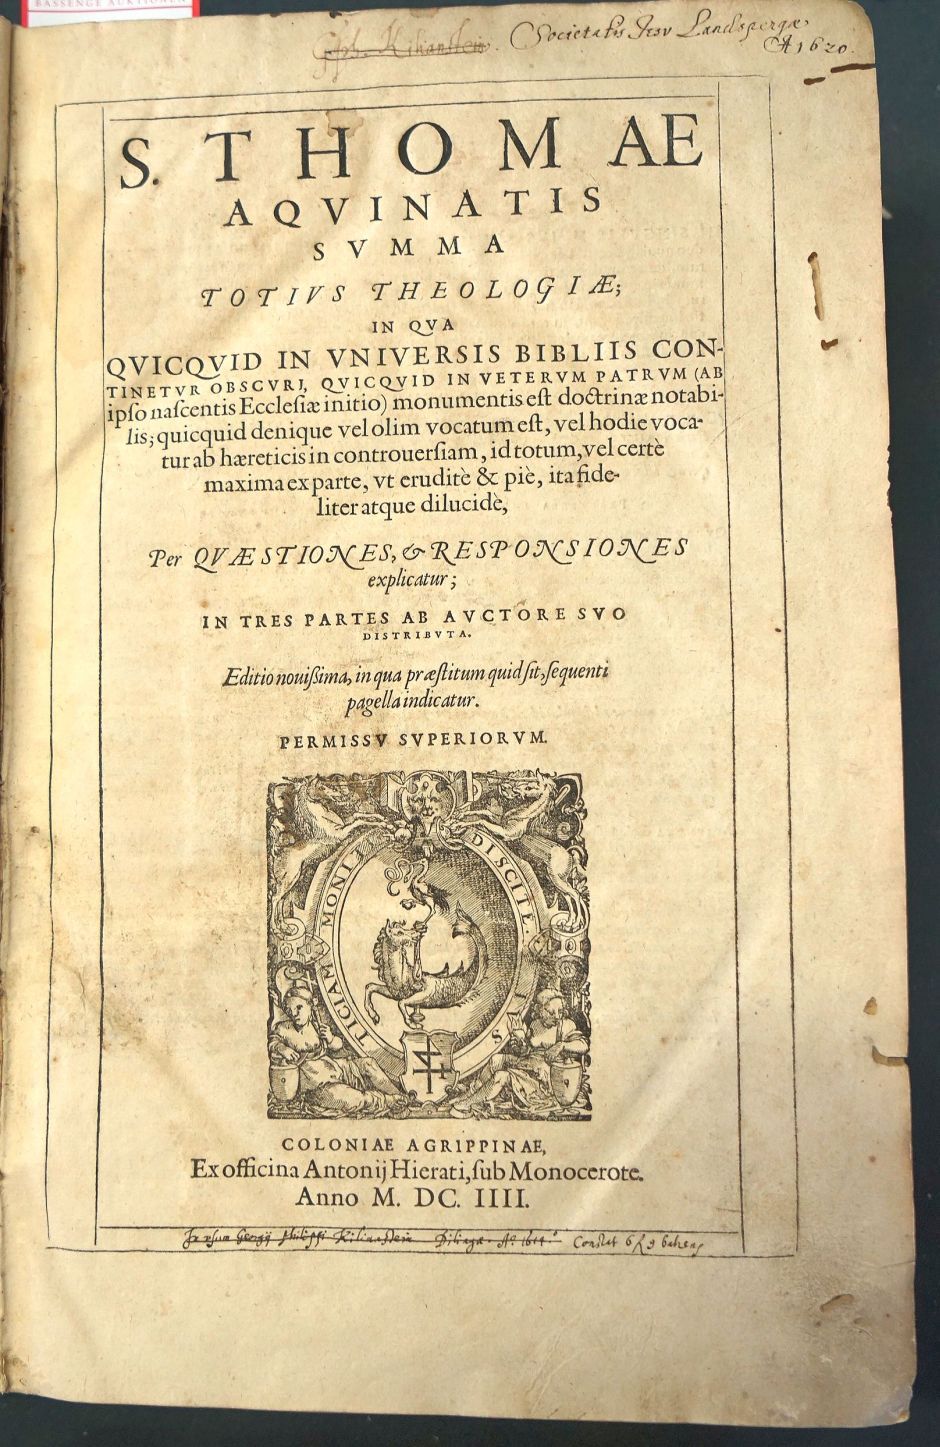 Lot 1337, Auction  115, Thomas von Aquin, Summa totius Theologiae